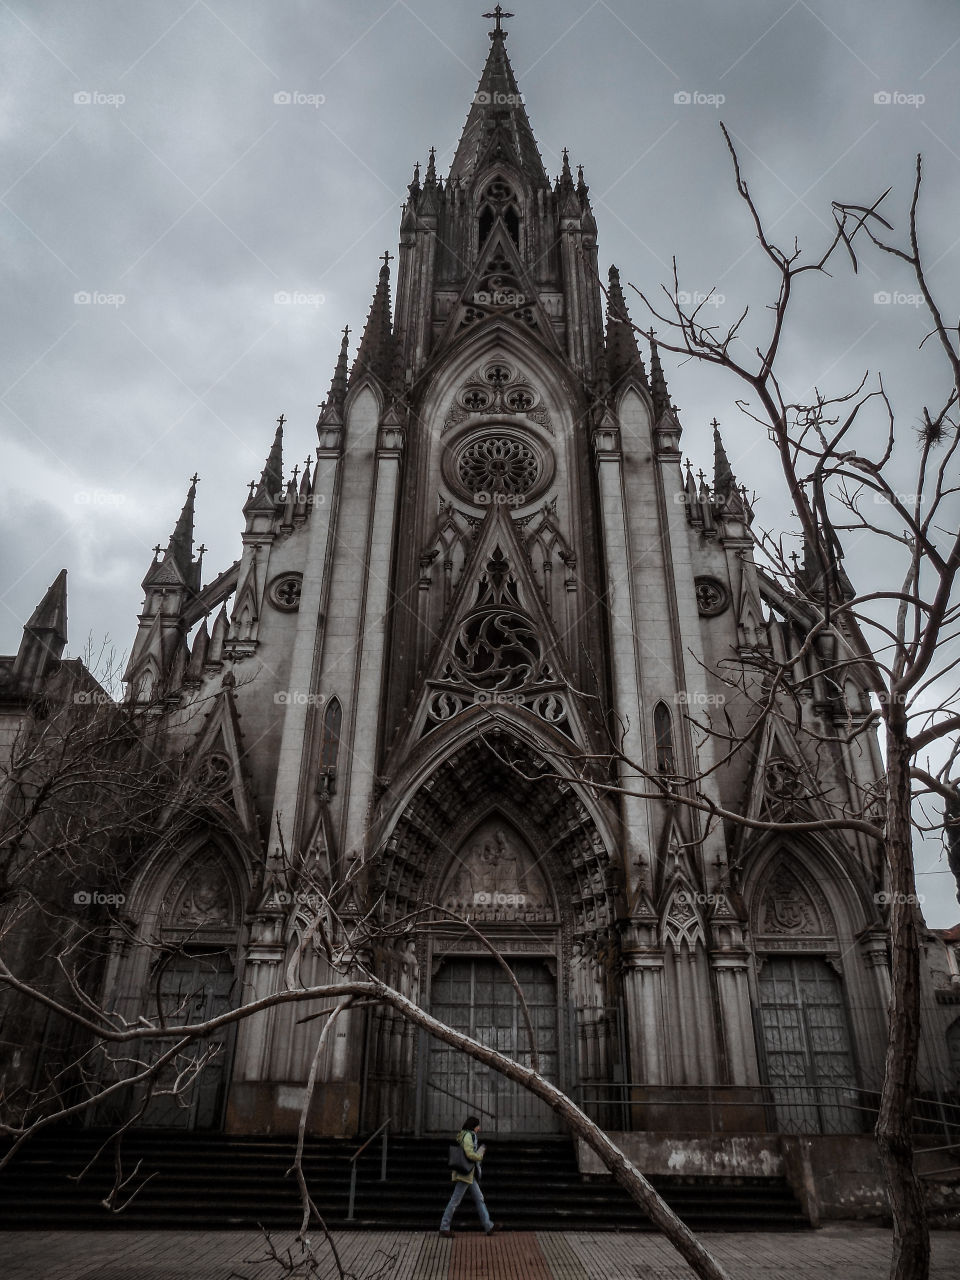 Misteriosa iglesia en un misterioso día.
📍 Prado - Uruguay.